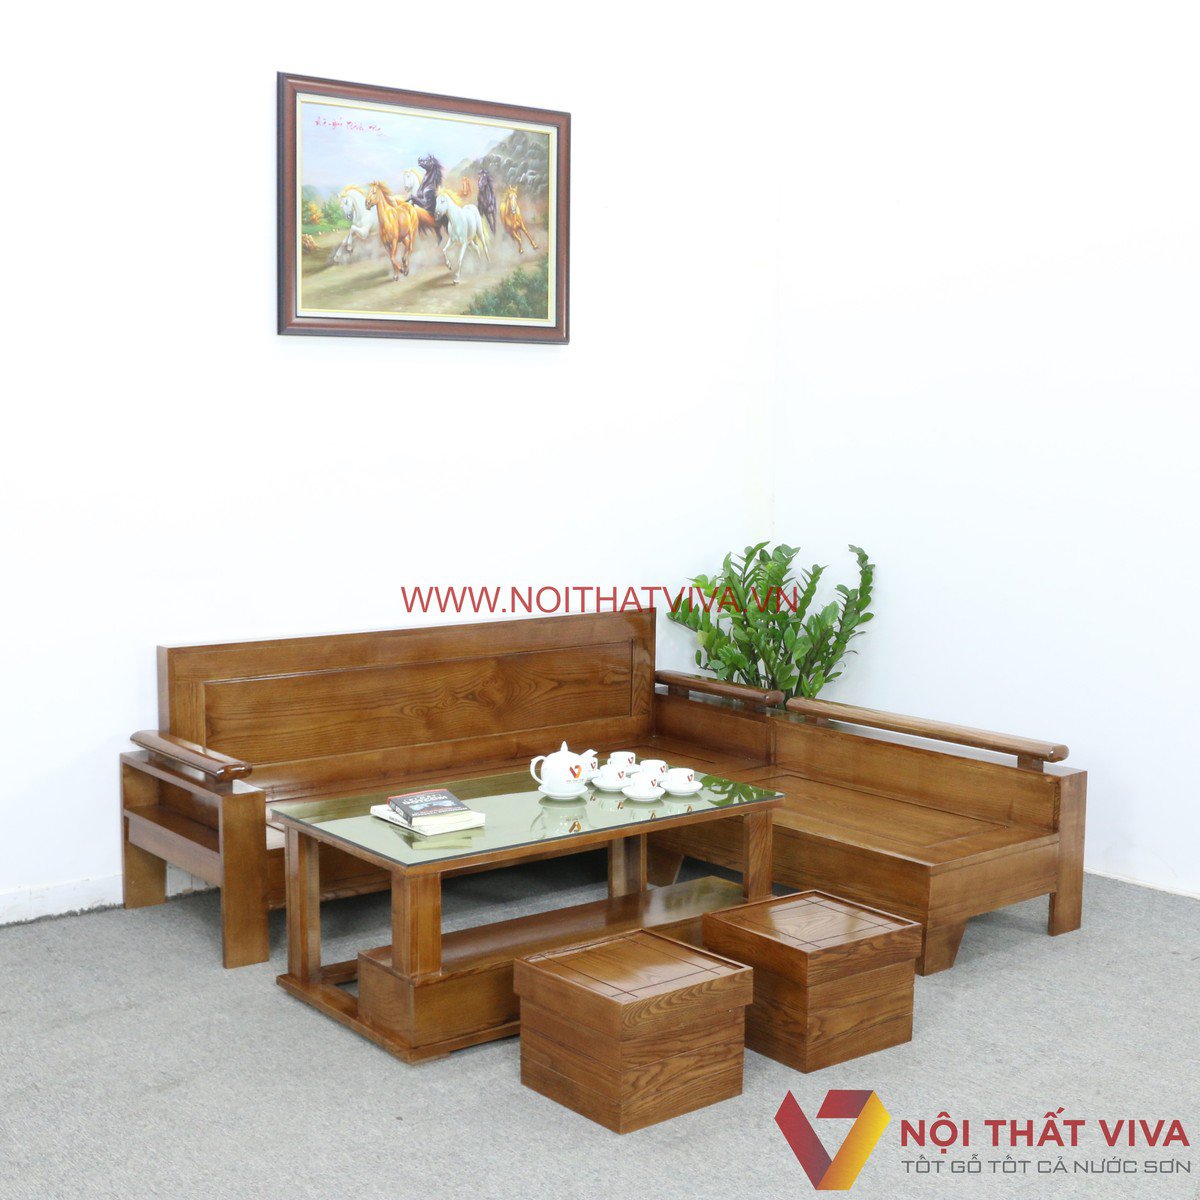 Sofa gỗ Sồi là gì? Đặc điểm và TOP 10 mẫu ghế sofa gỗ Sồi đẹp nhất